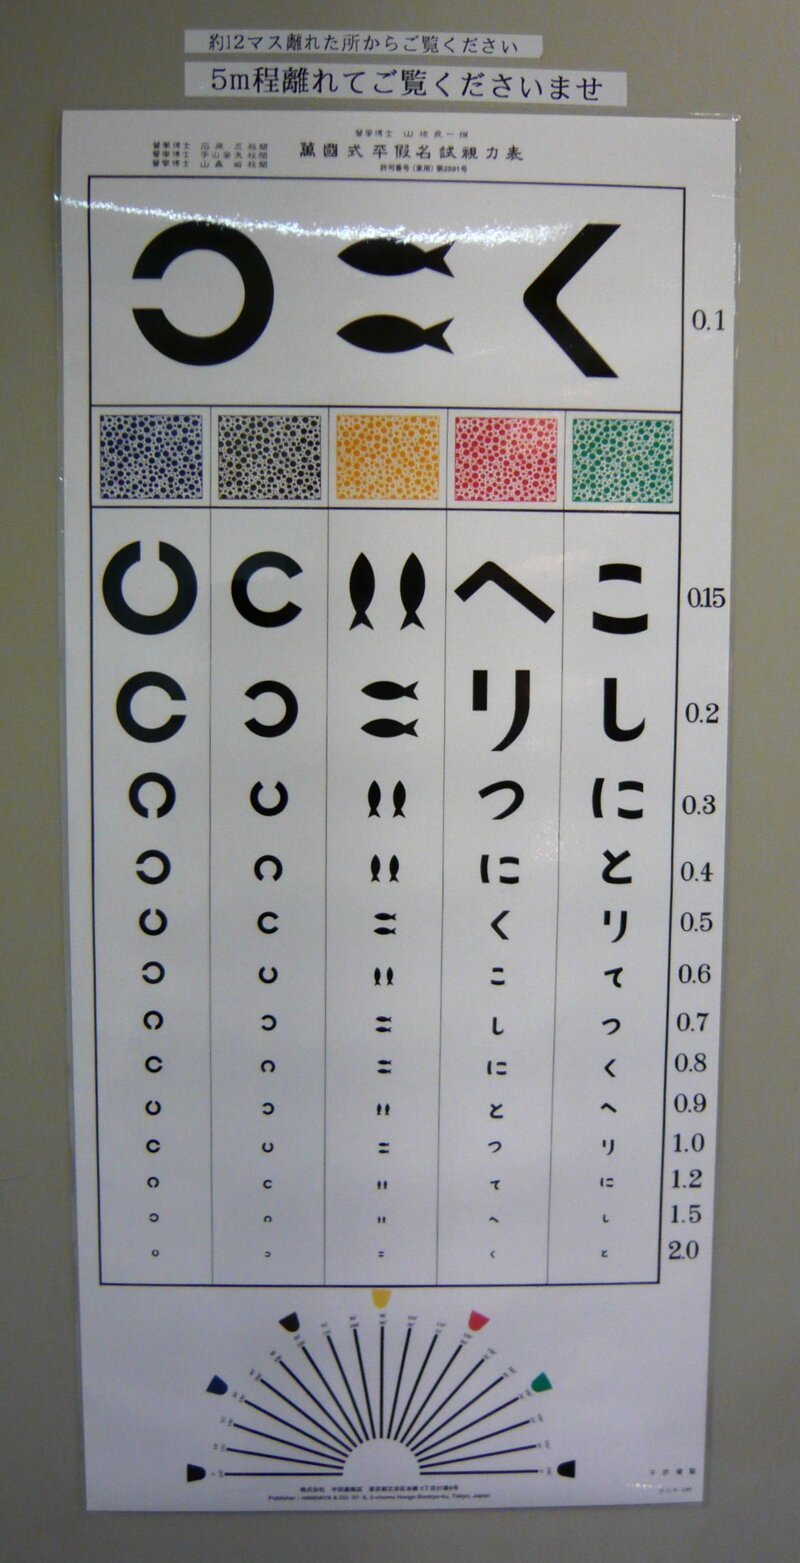 Одна из японских таблиц для проверки зрения